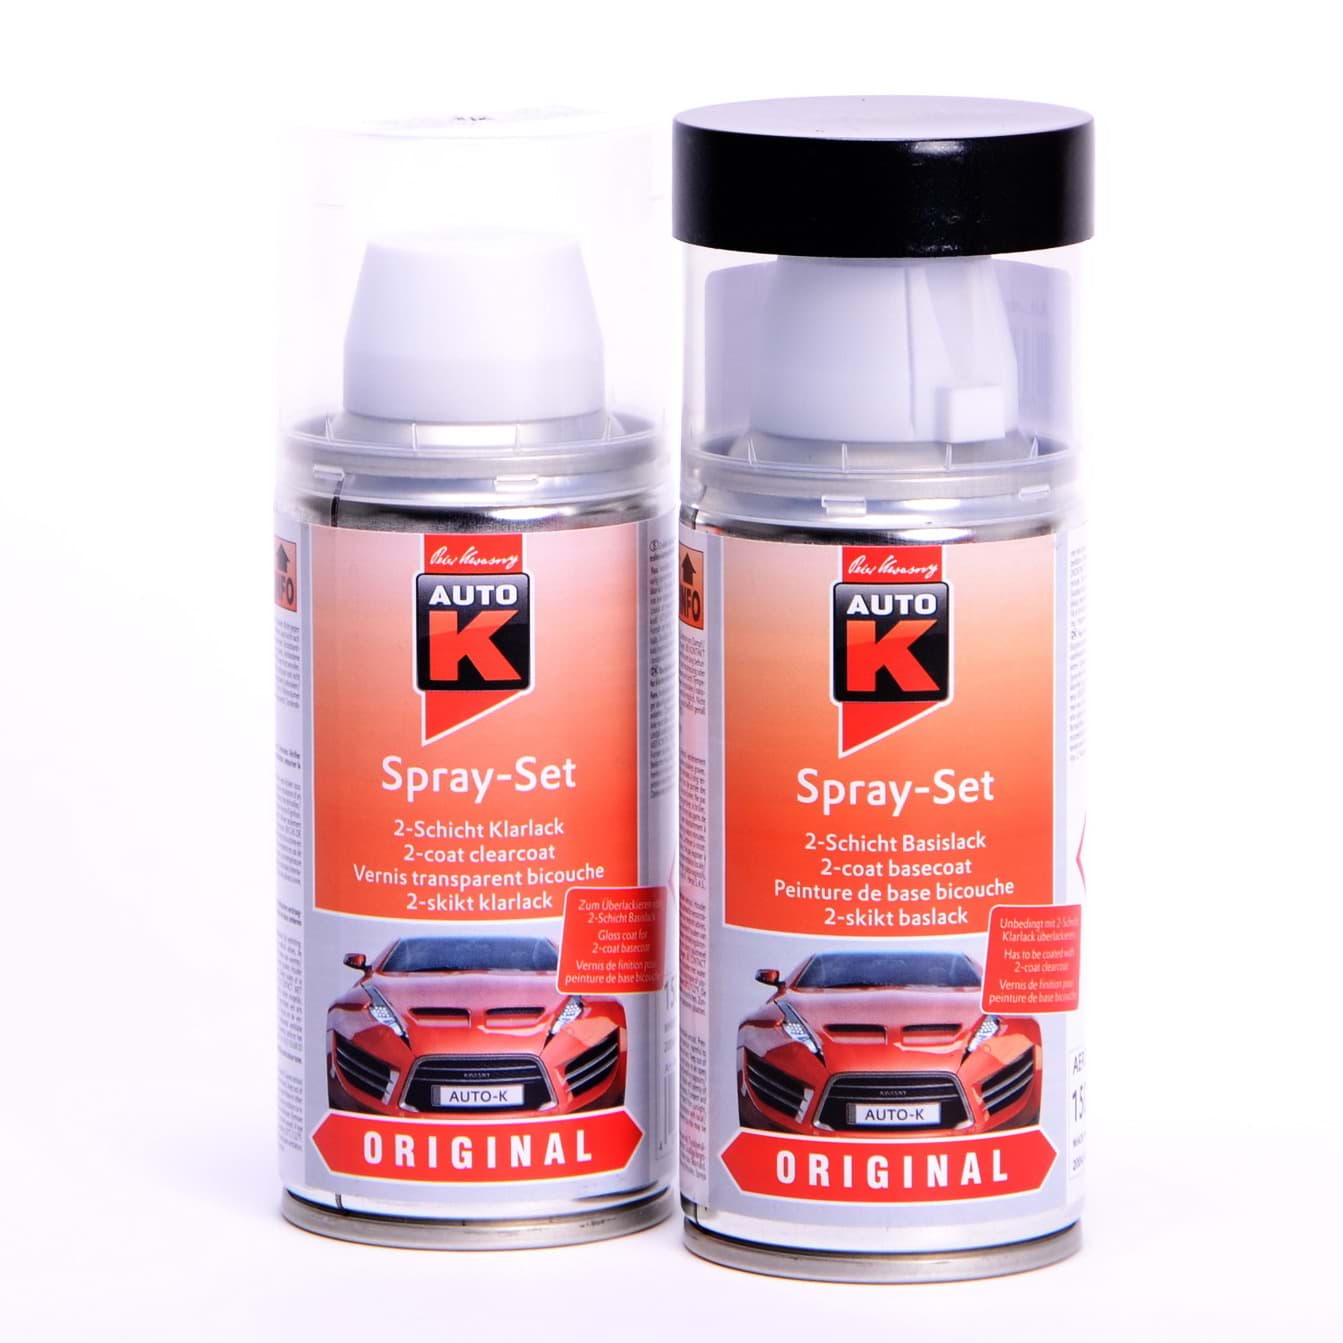 Afbeelding van Auto-K Spray-Set Autolack für Opel 200 Schwarz 21447